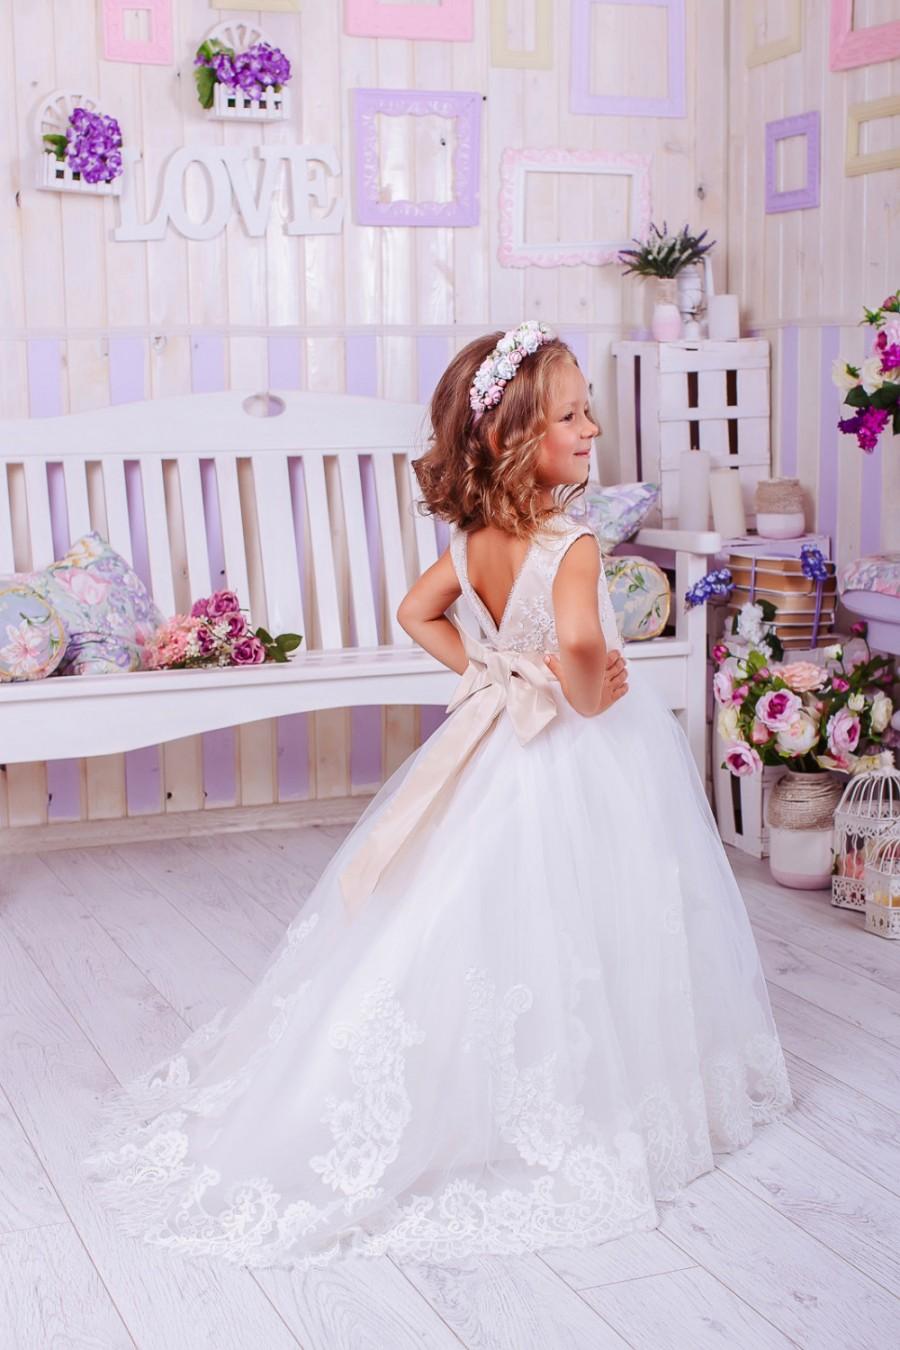 زفاف - Ivory Lace Flower Girl Dress,Flower Girl Dress,Wedding Party Dress,Baby Dress, Rustic Girl Dress,White Girls Dresses,Tulle Lace Flower Girl